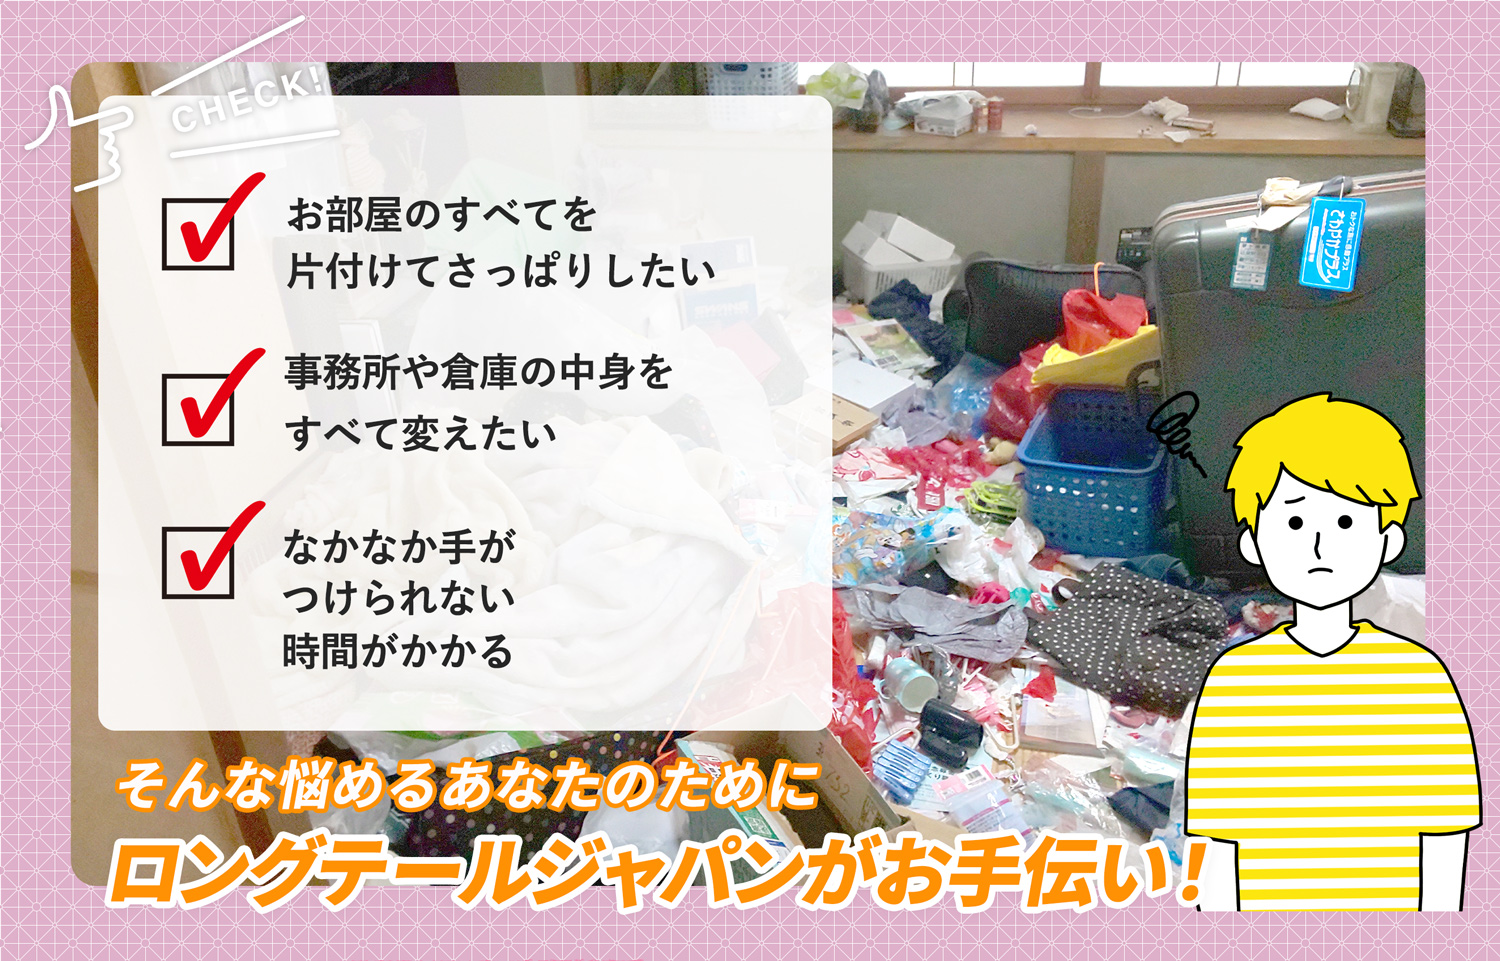 長野県でお部屋の中から店舗、事務所、倉庫まで自分達で片付けられない場合はお部屋の片付け隊がやらせていただきます。